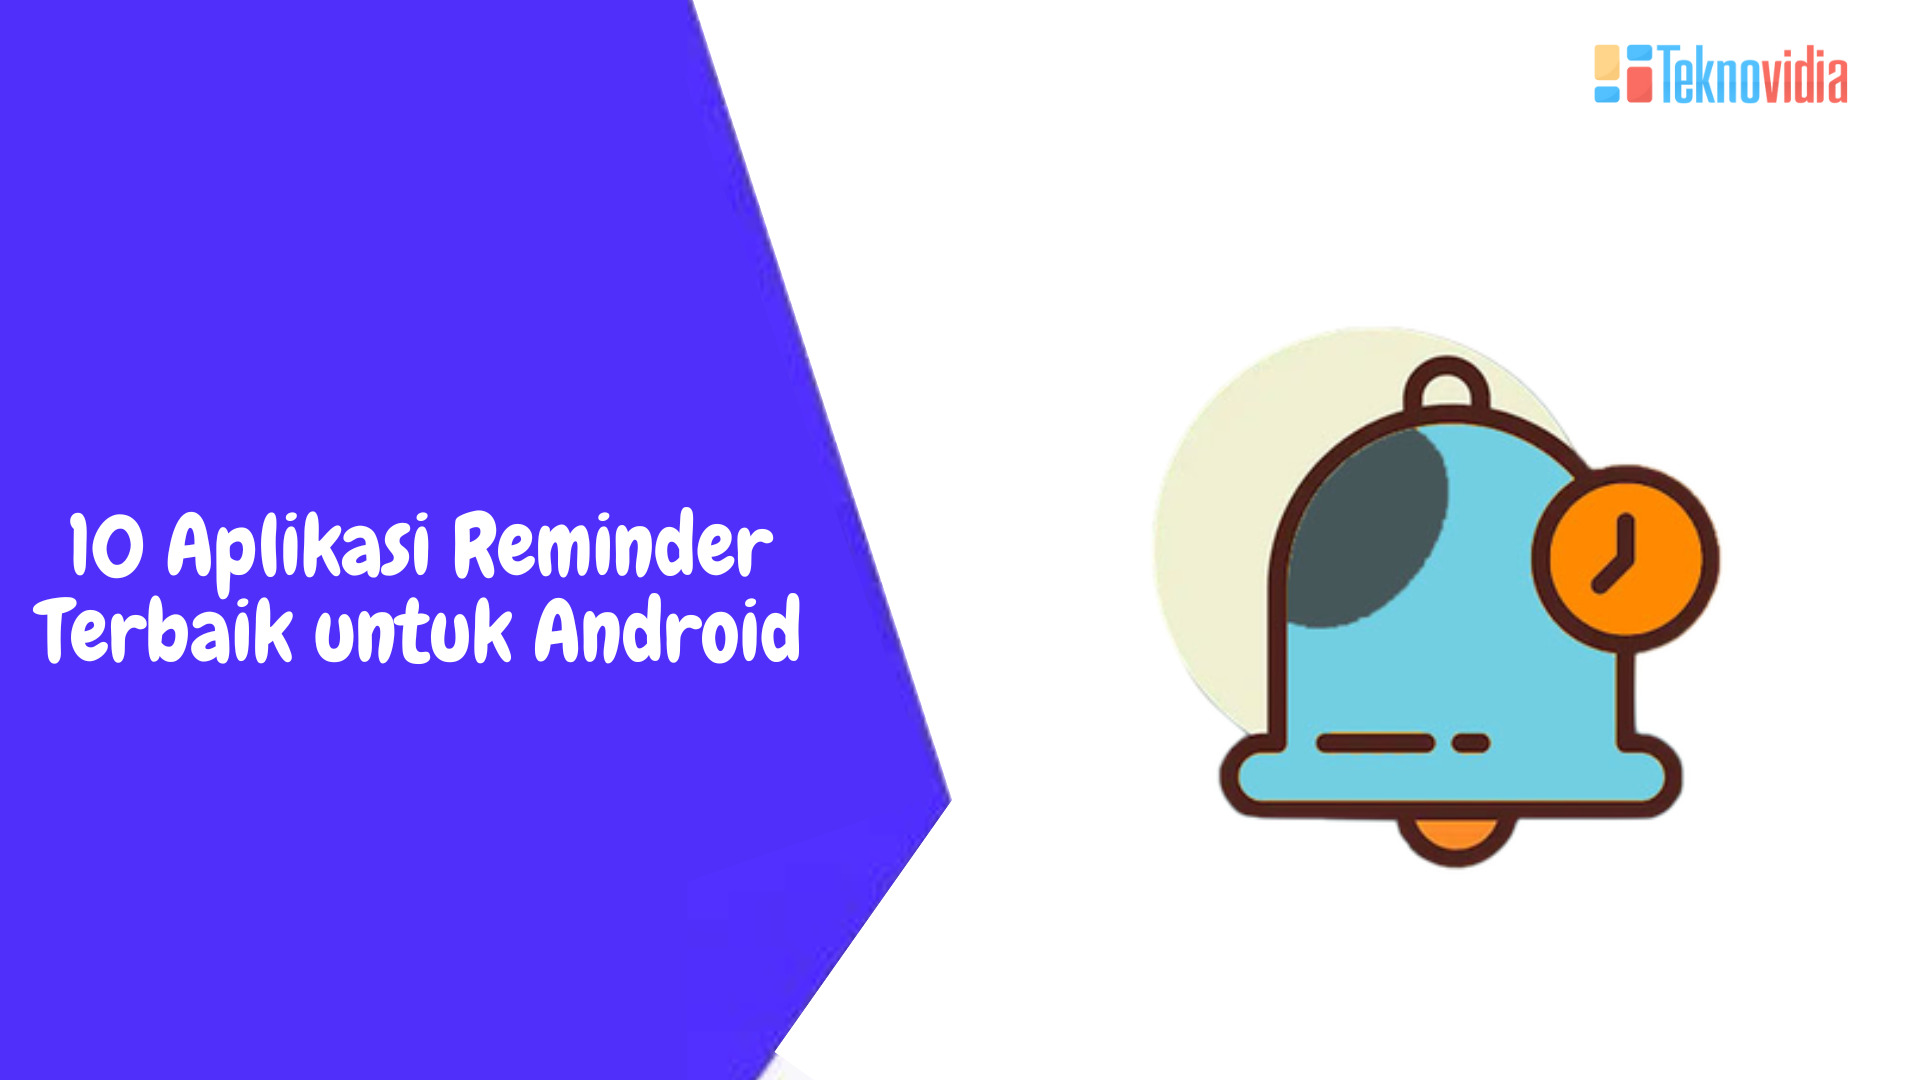 10 Aplikasi Reminder Terbaik untuk Android